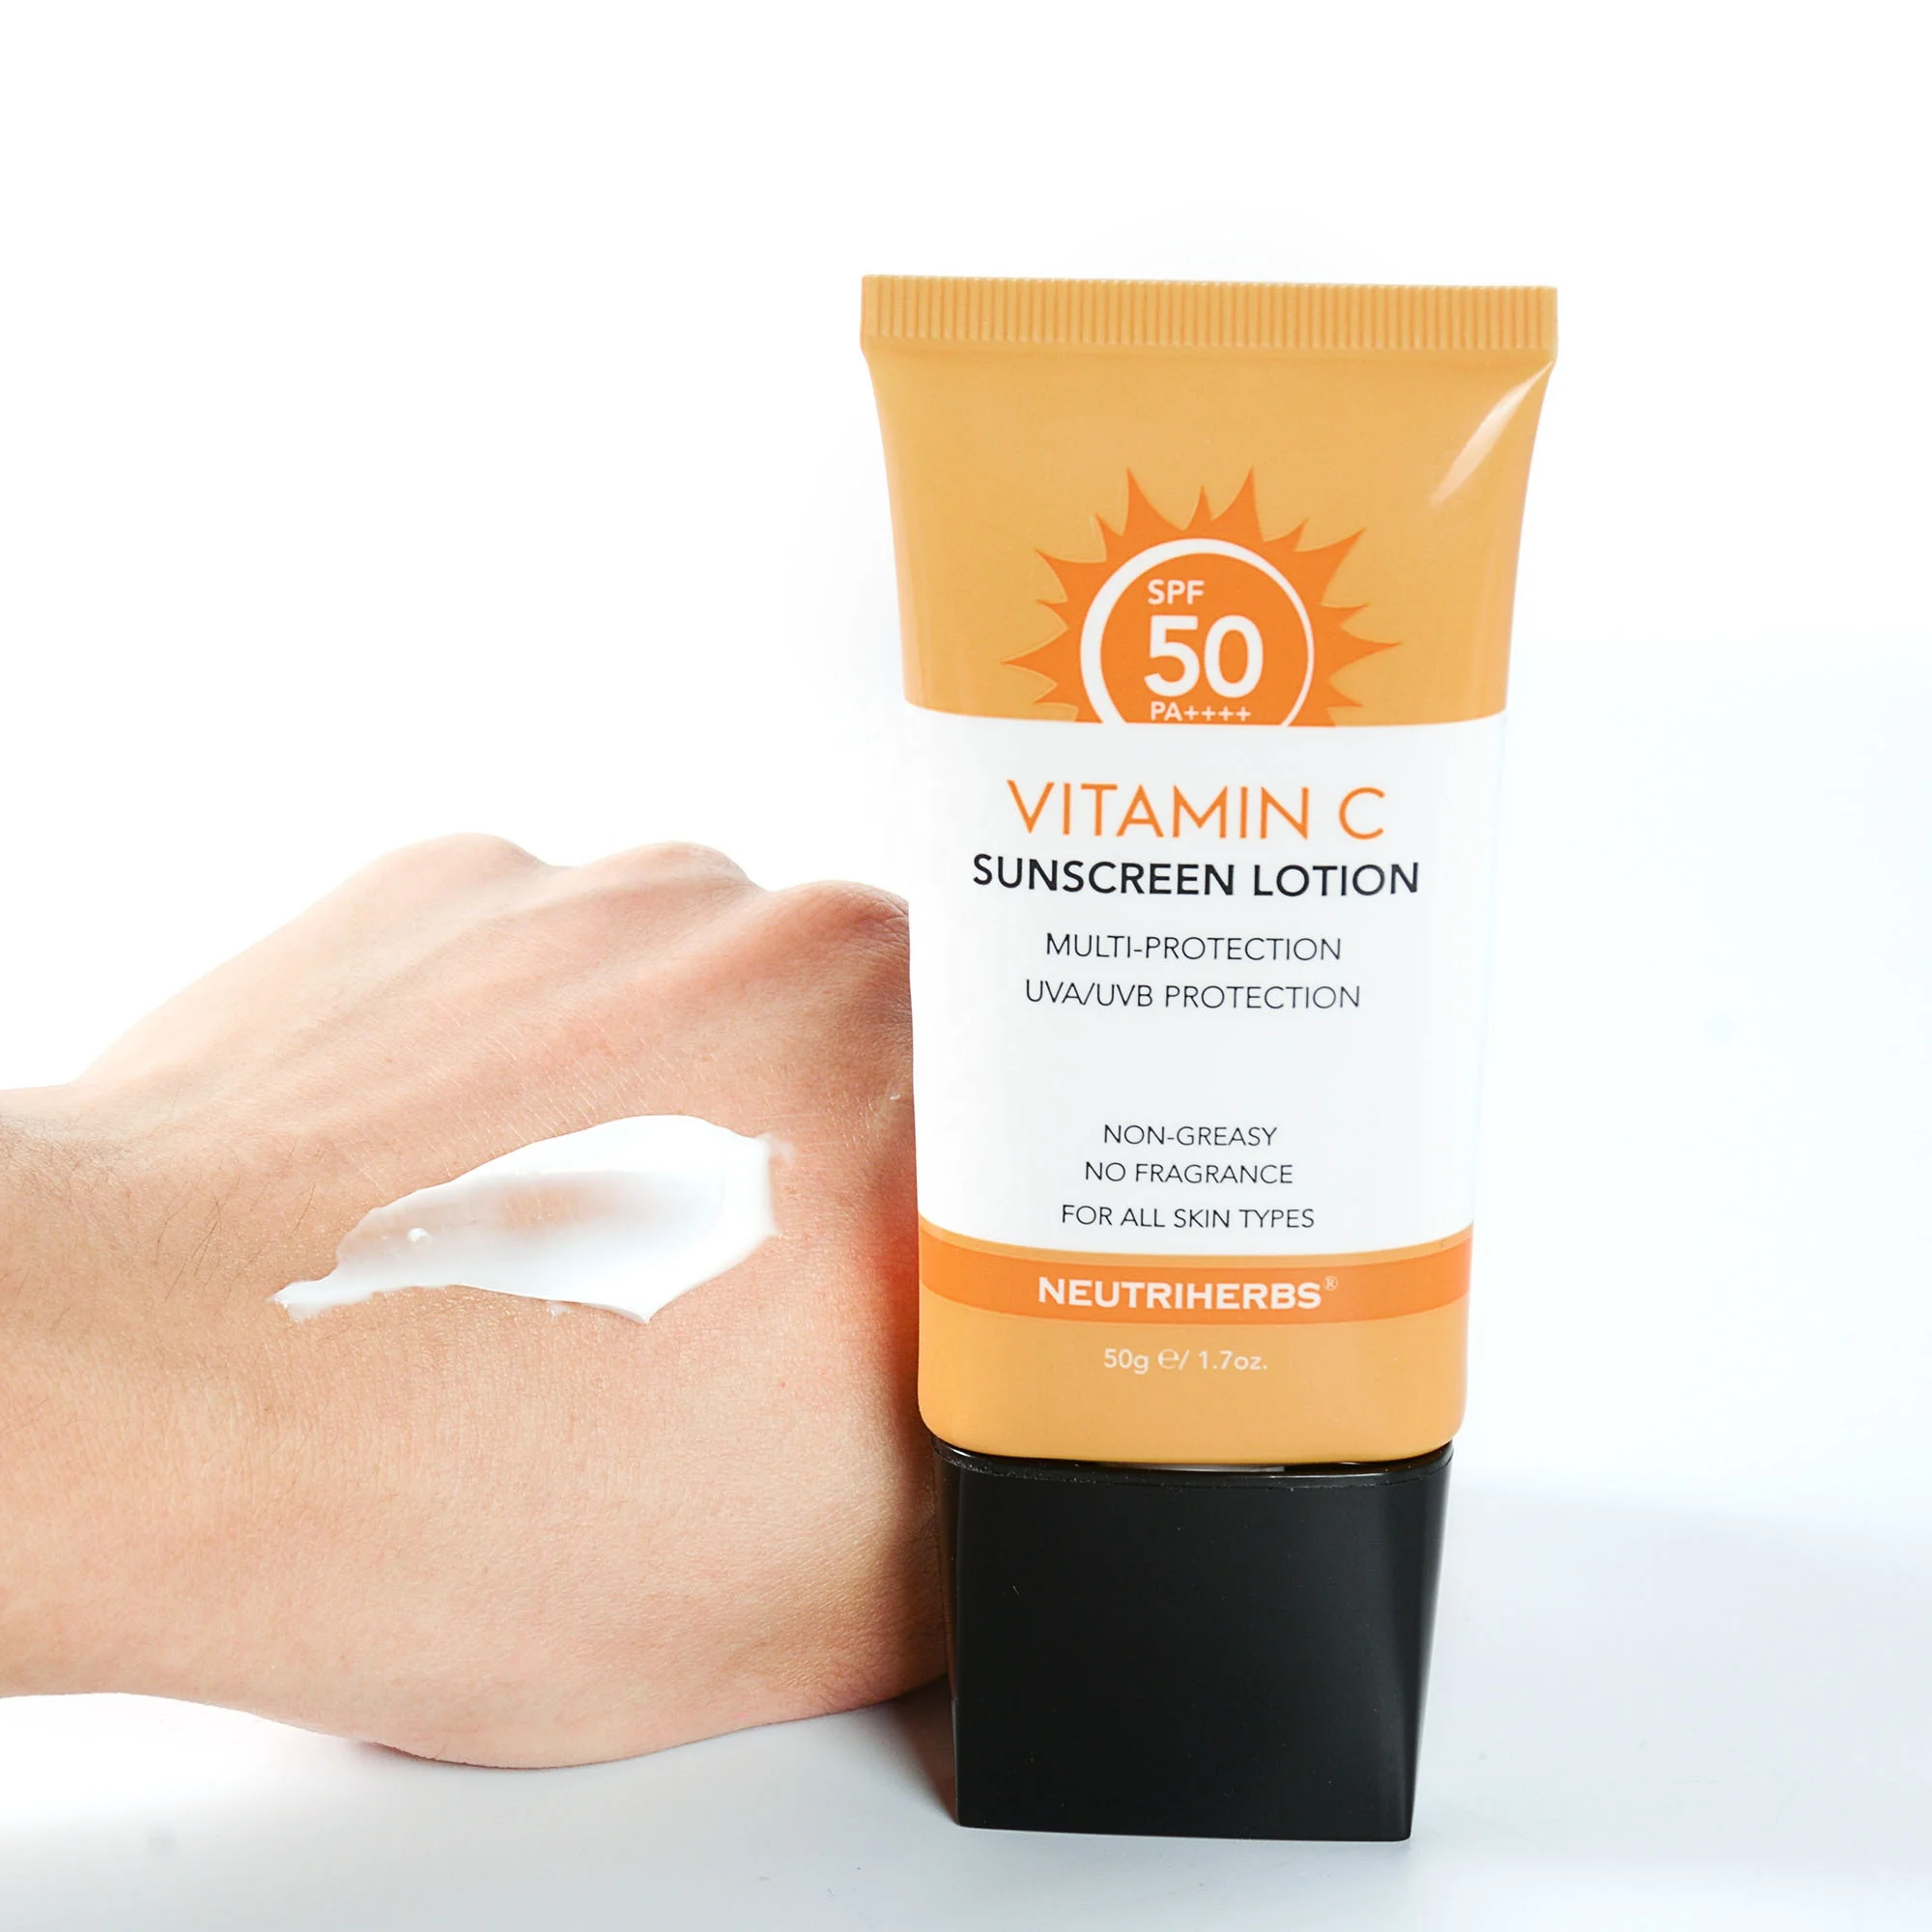 

Spf 50 Spf30 Natural Private Label Face Skin Care Whitening Sunscreen Vitamin C Sunblock Lotion Sunscreen Cream Cream Sunscreen